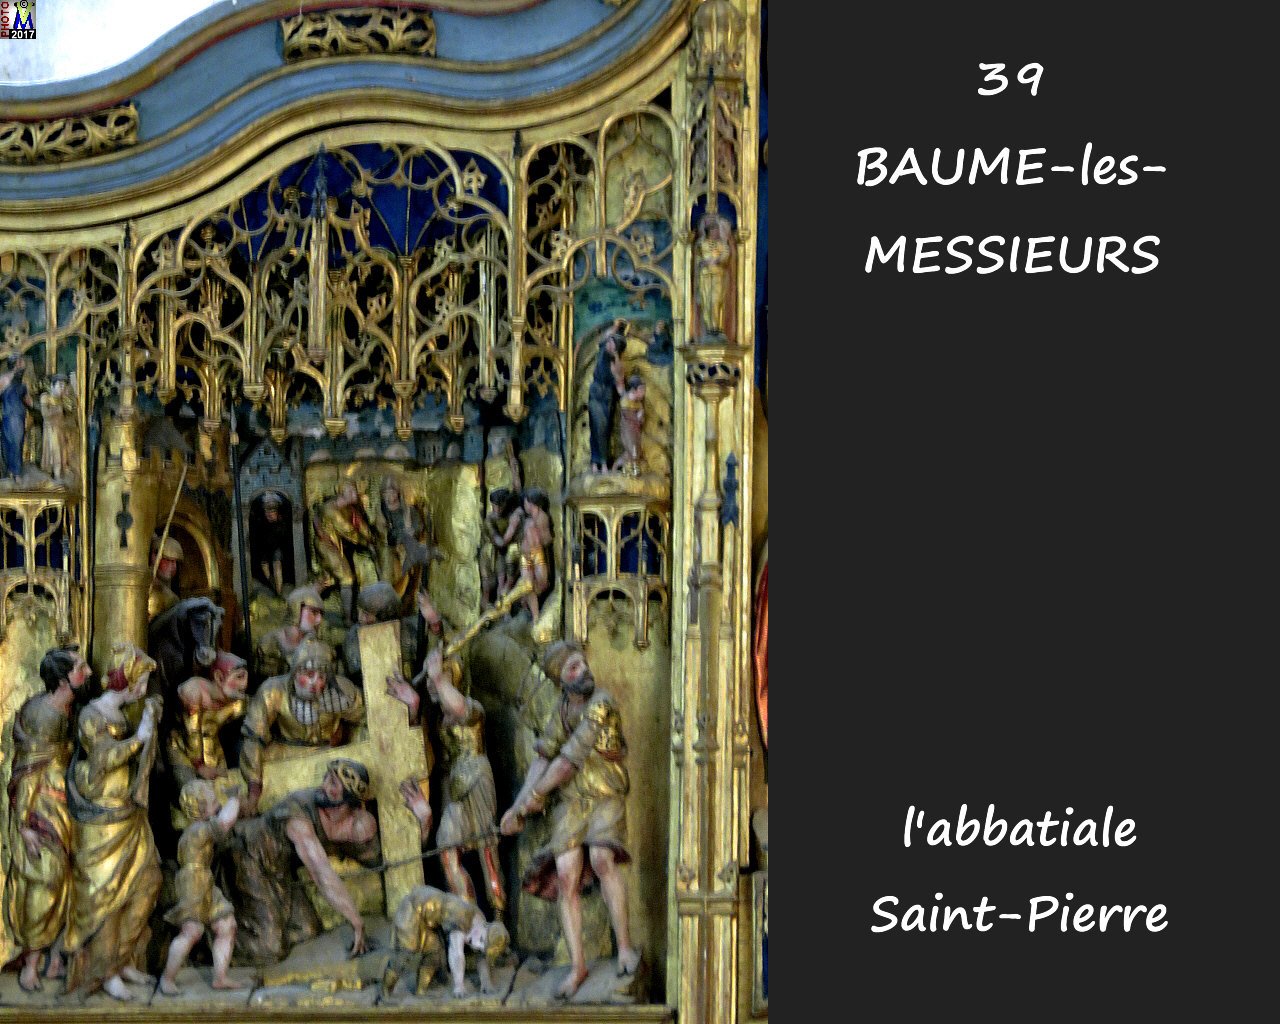 39BAUME-LES-MESSIEURS_abbatiale_238.jpg